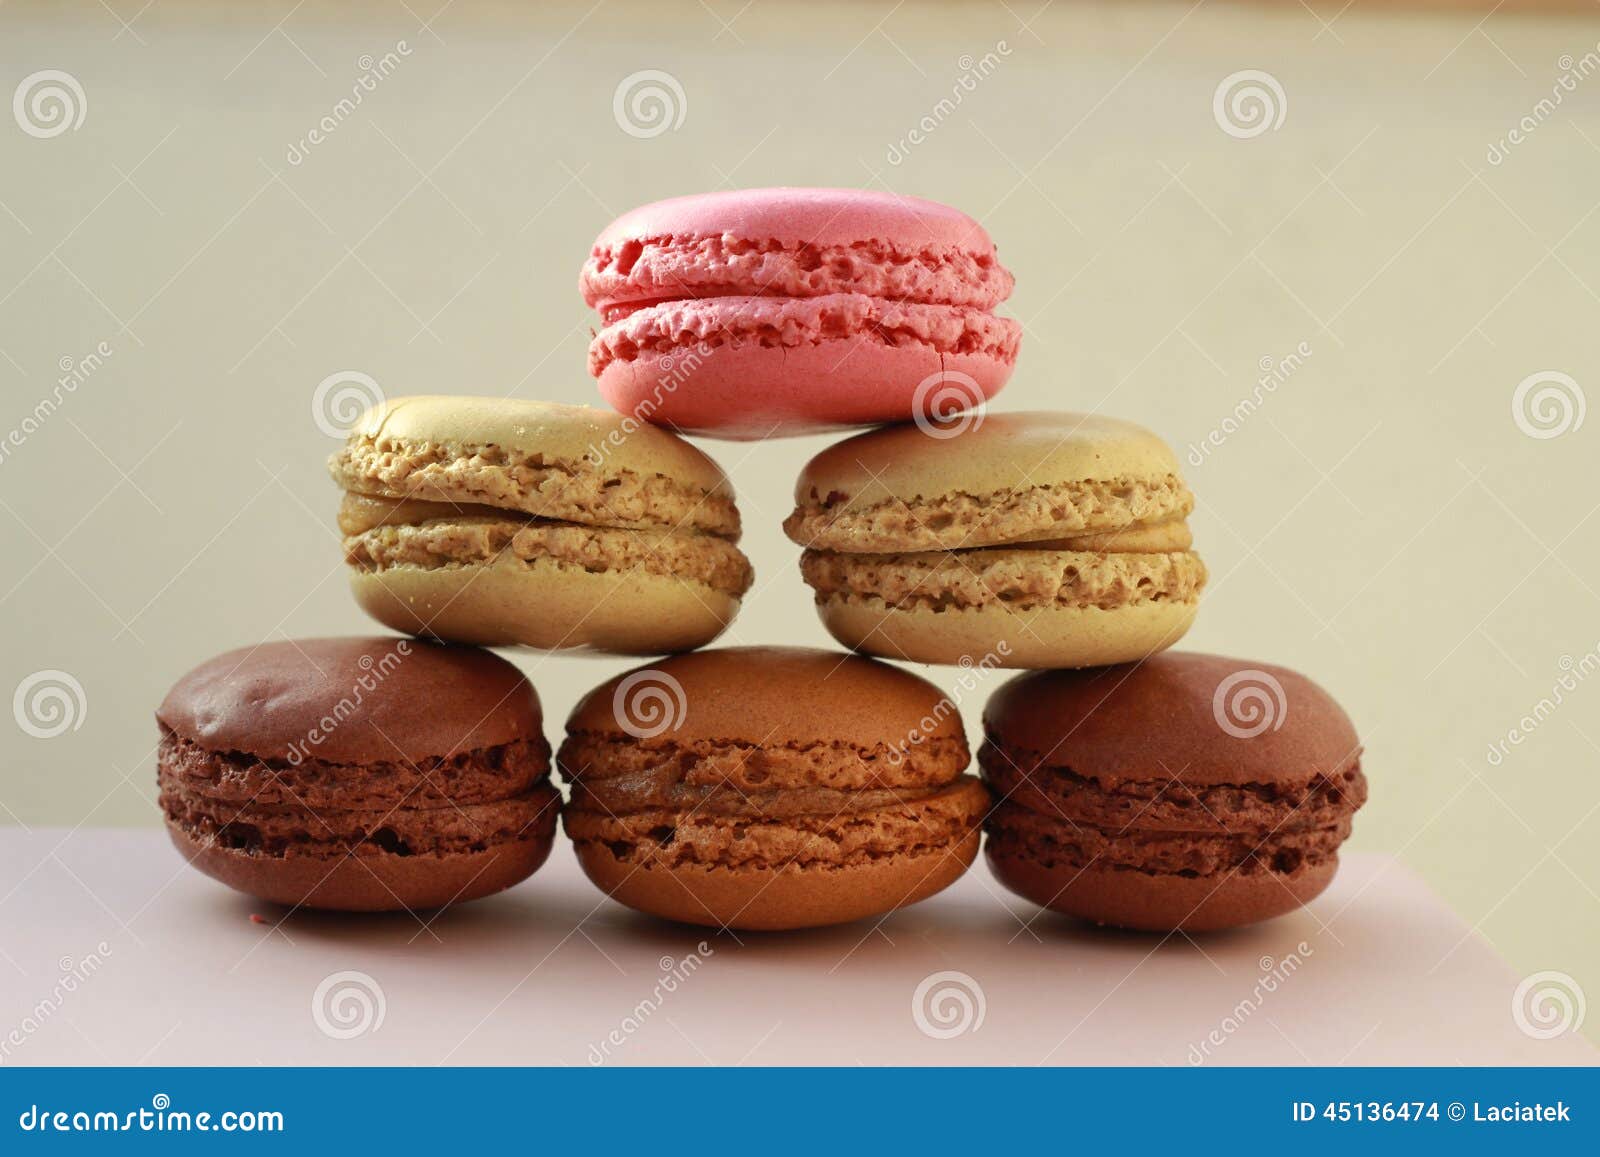 French Macarons Stock Photo | CartoonDealer.com #45649956